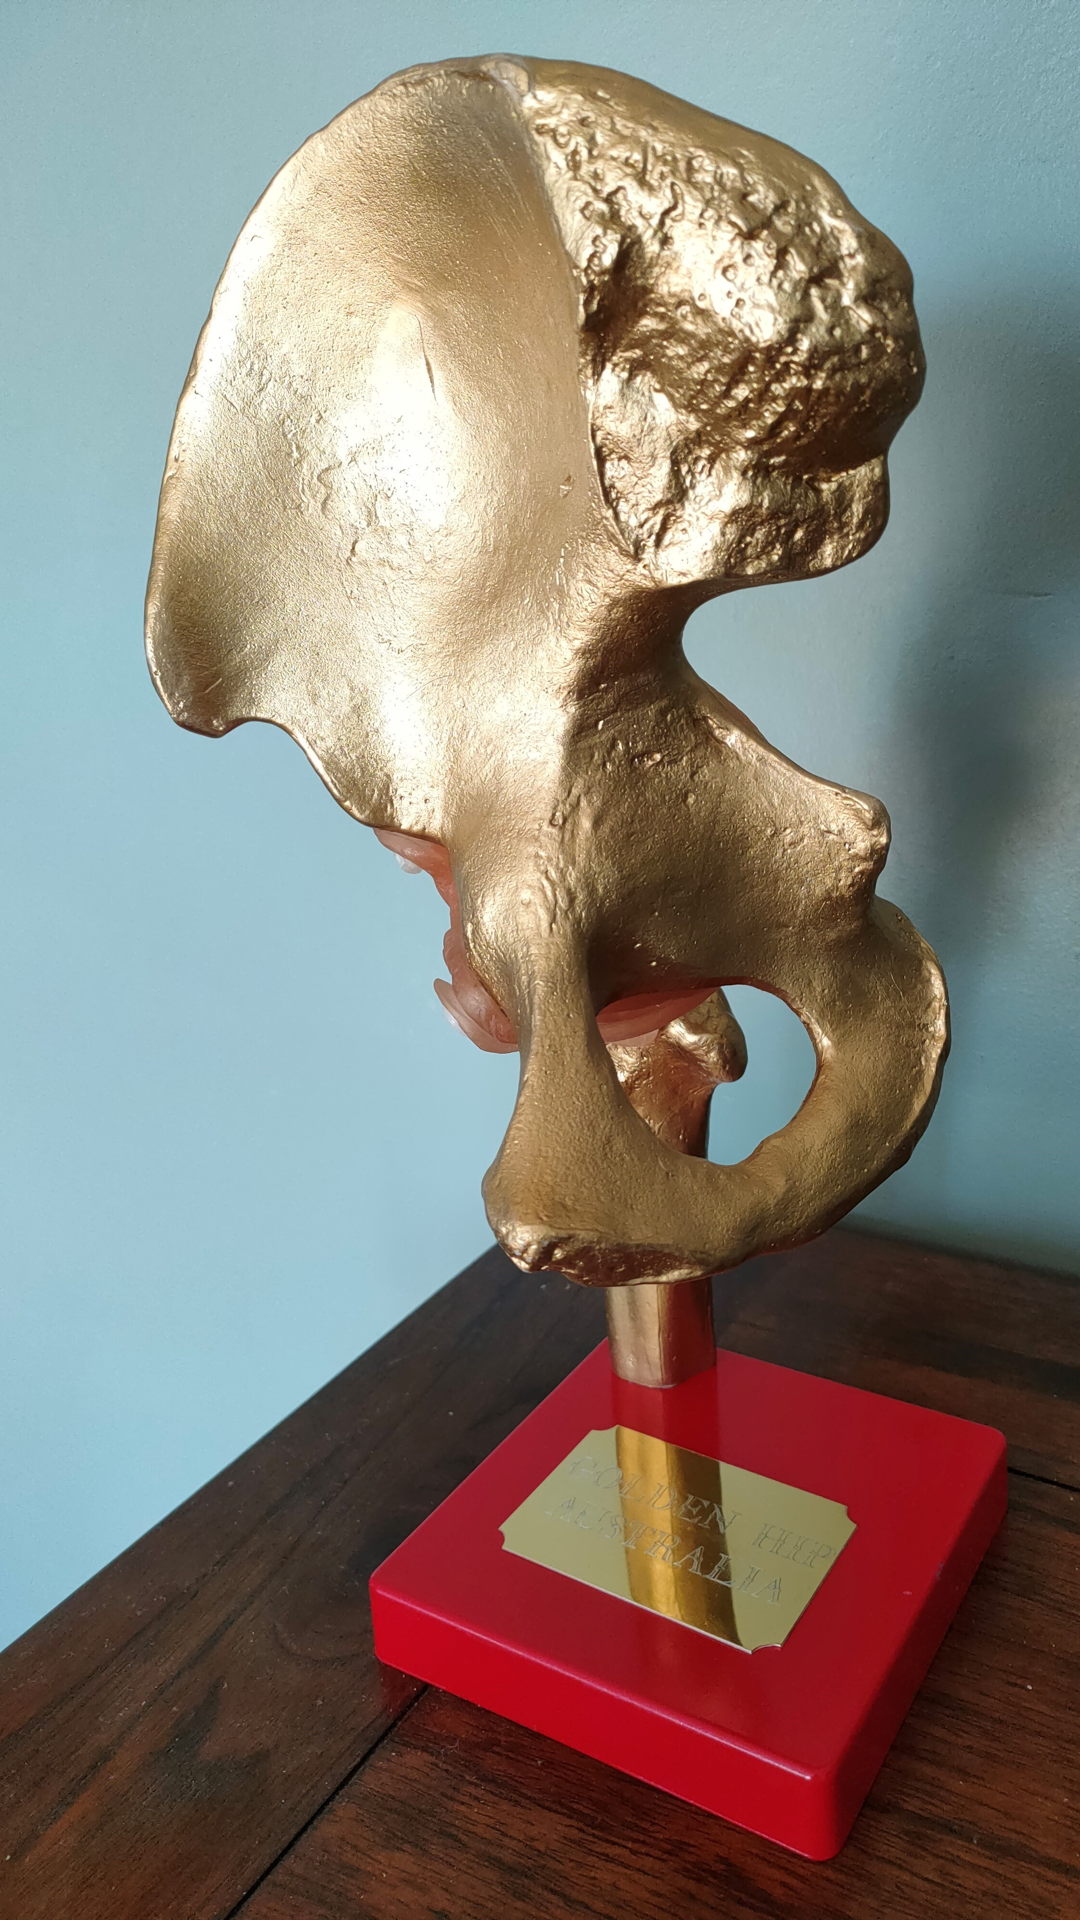 The Golden Hip Award 